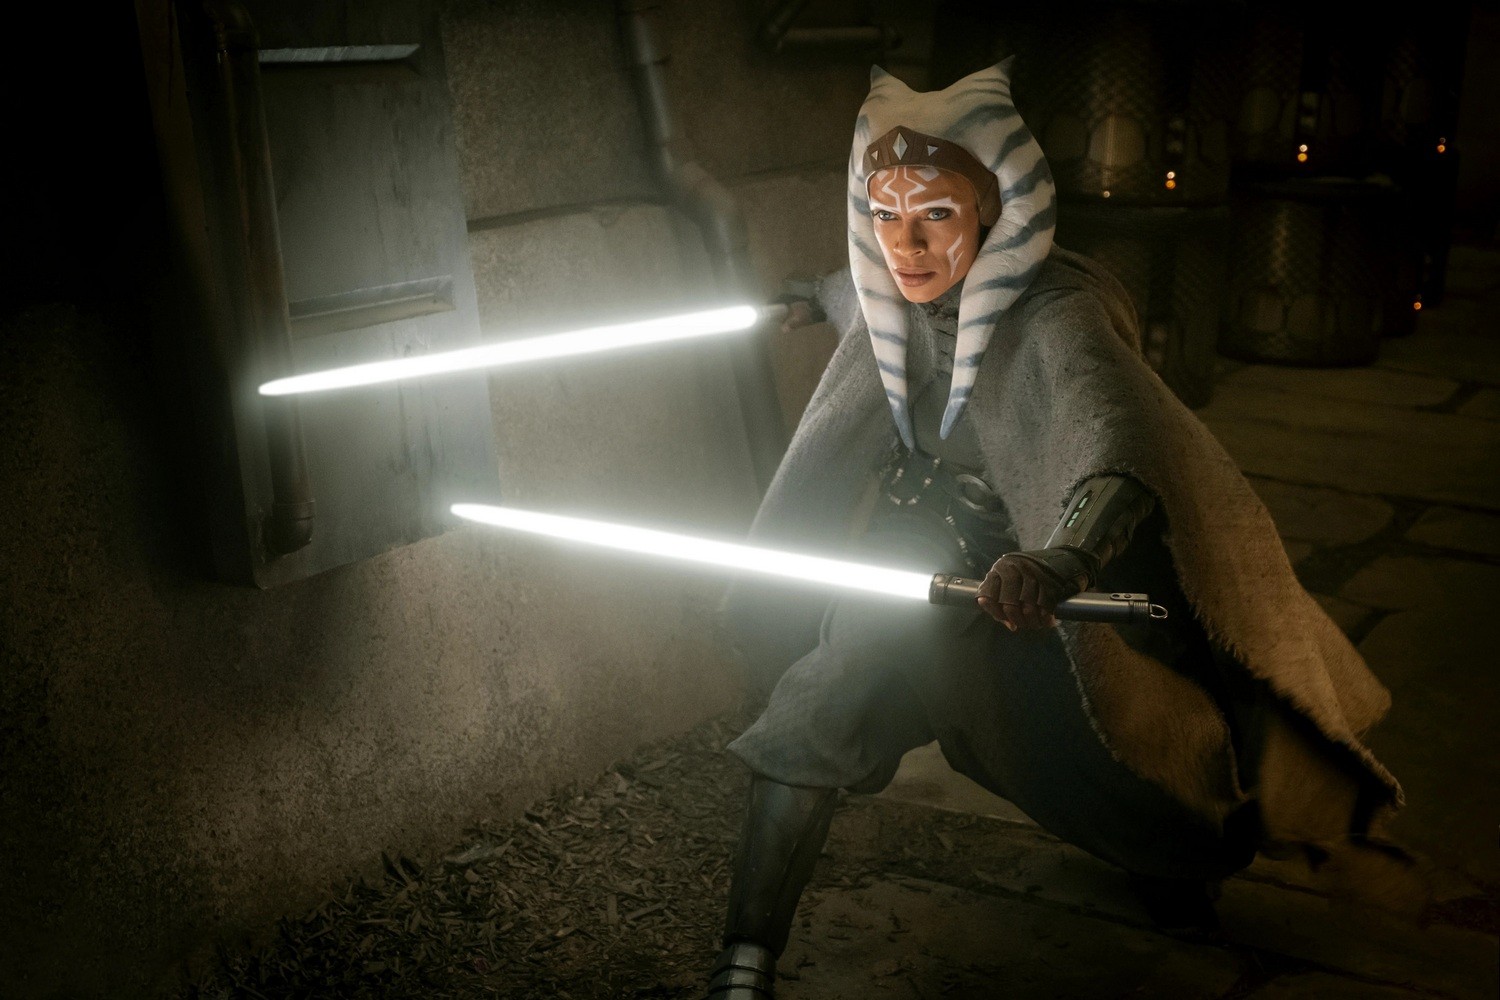 Украинская актриса Иванна Сахно сыграет в сериале Star Wars: Ahsoka для платформы Disney+